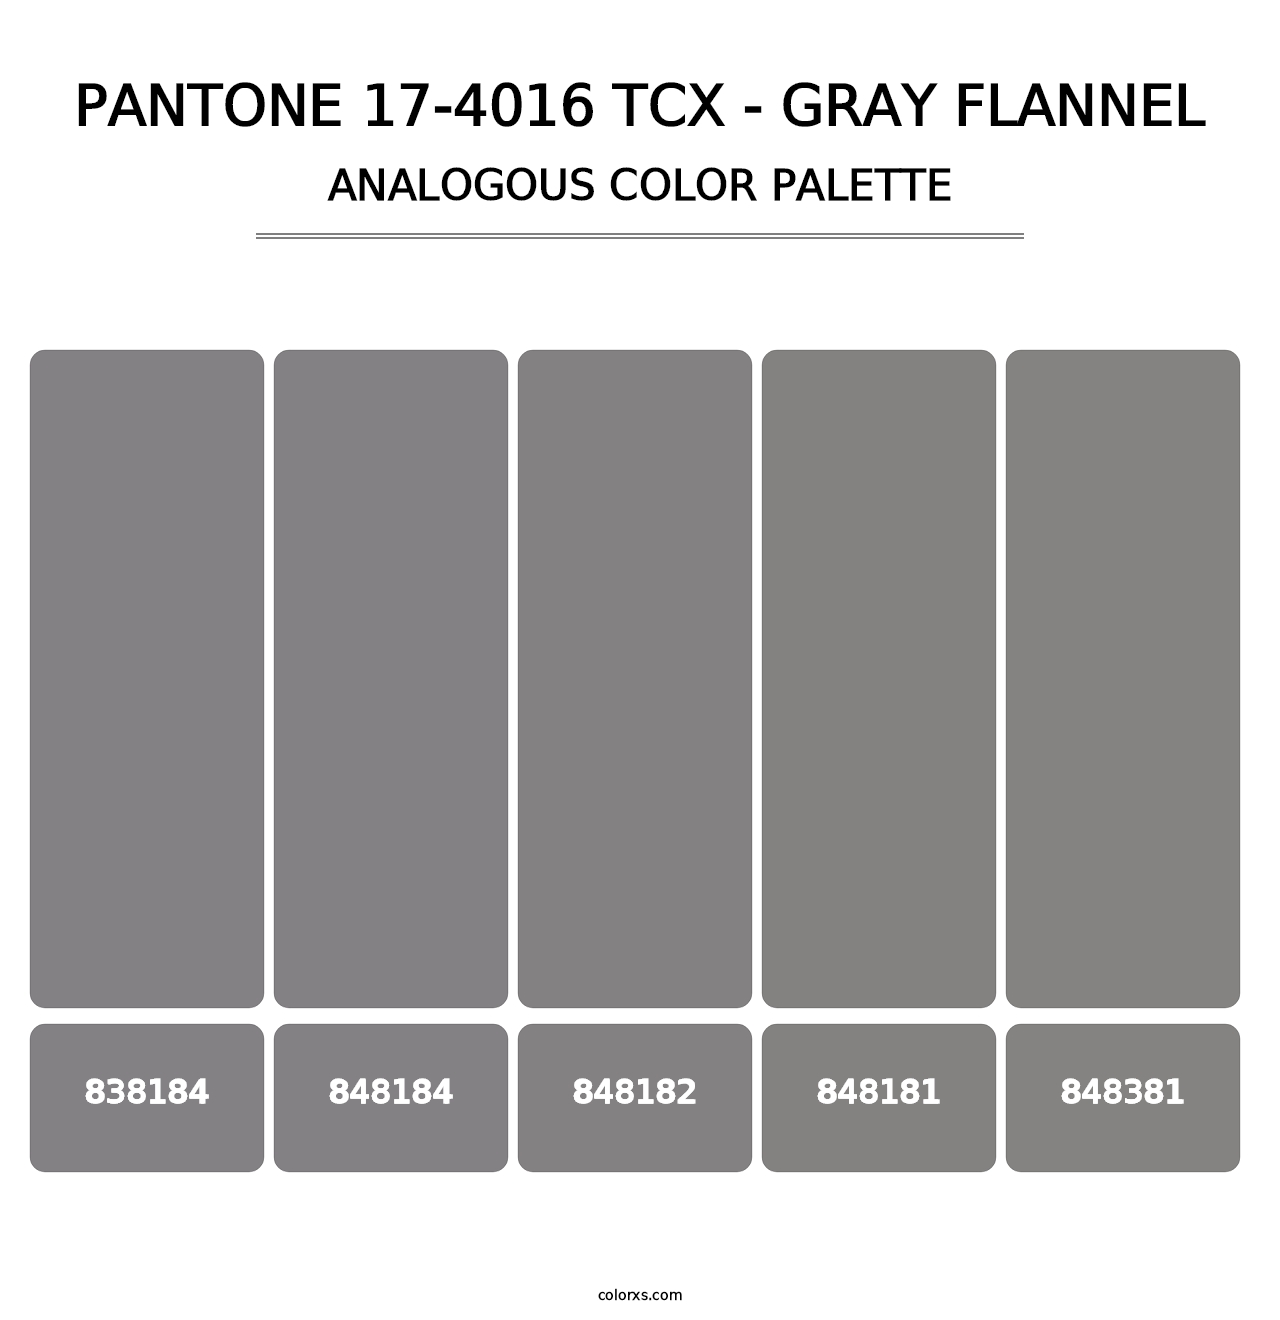 PANTONE 17-4016 TCX - Gray Flannel - Analogous Color Palette